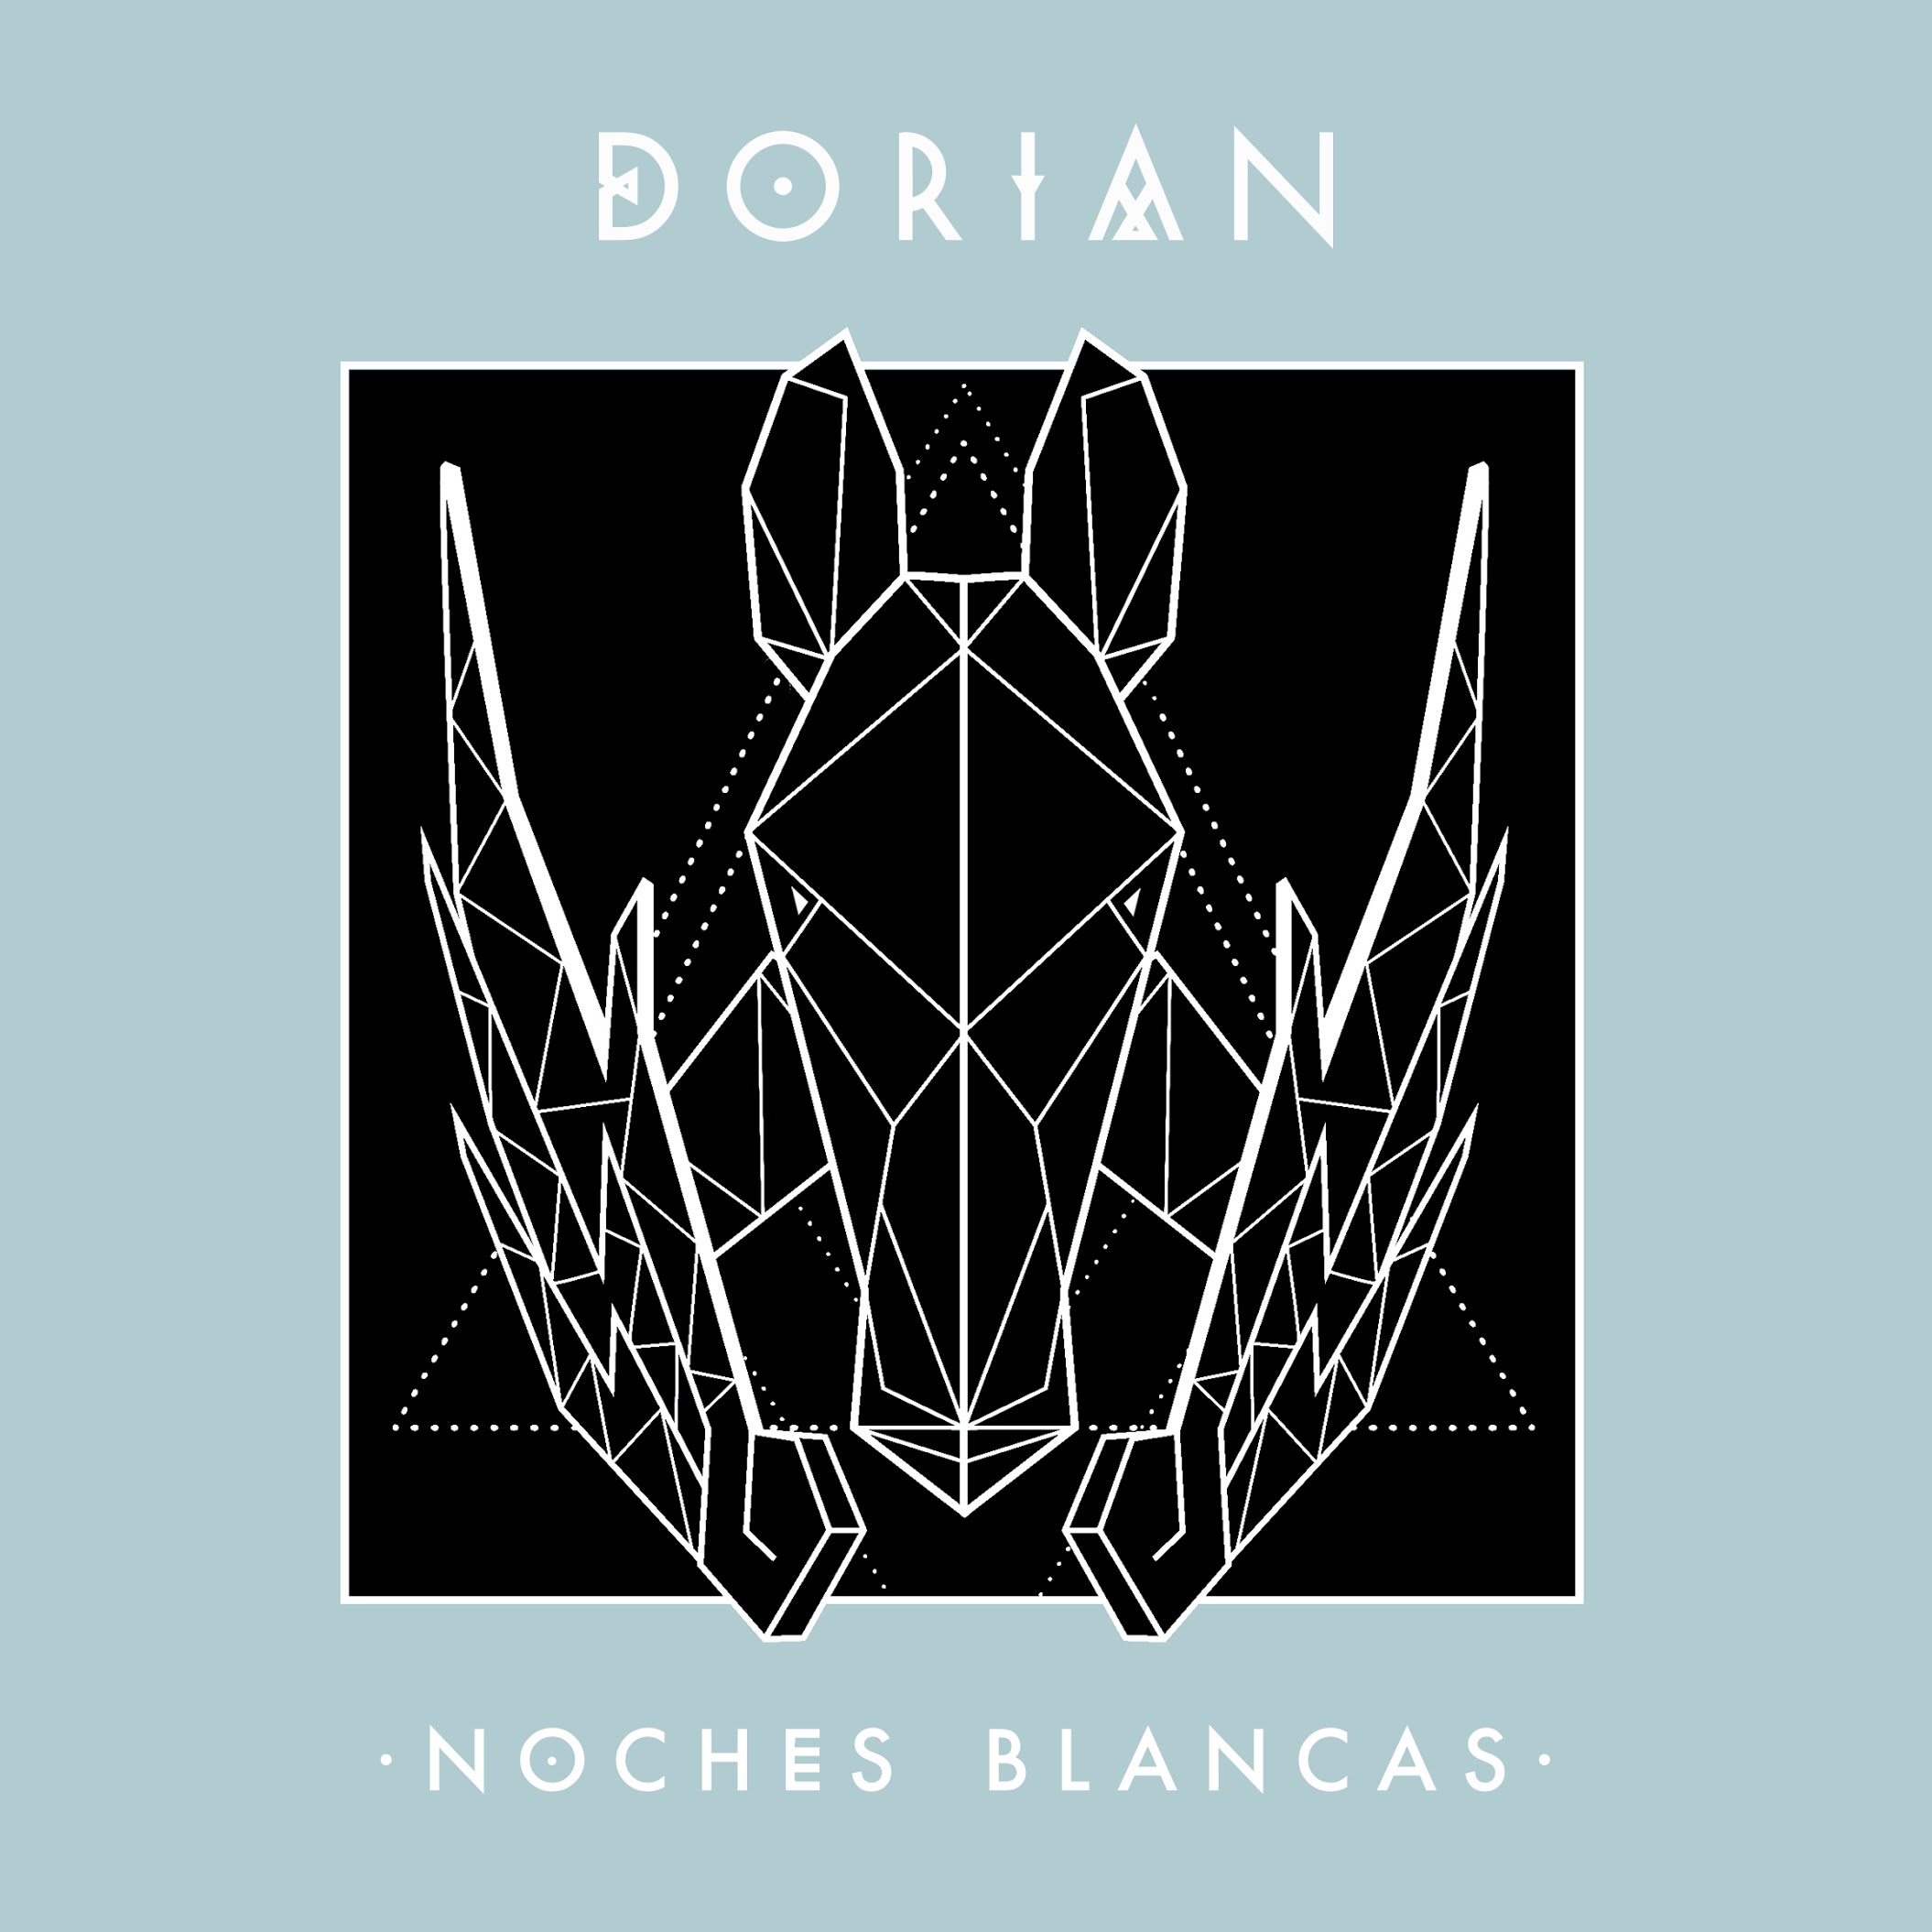 Dorian regresa con nuevo vídeo y fechas de gira